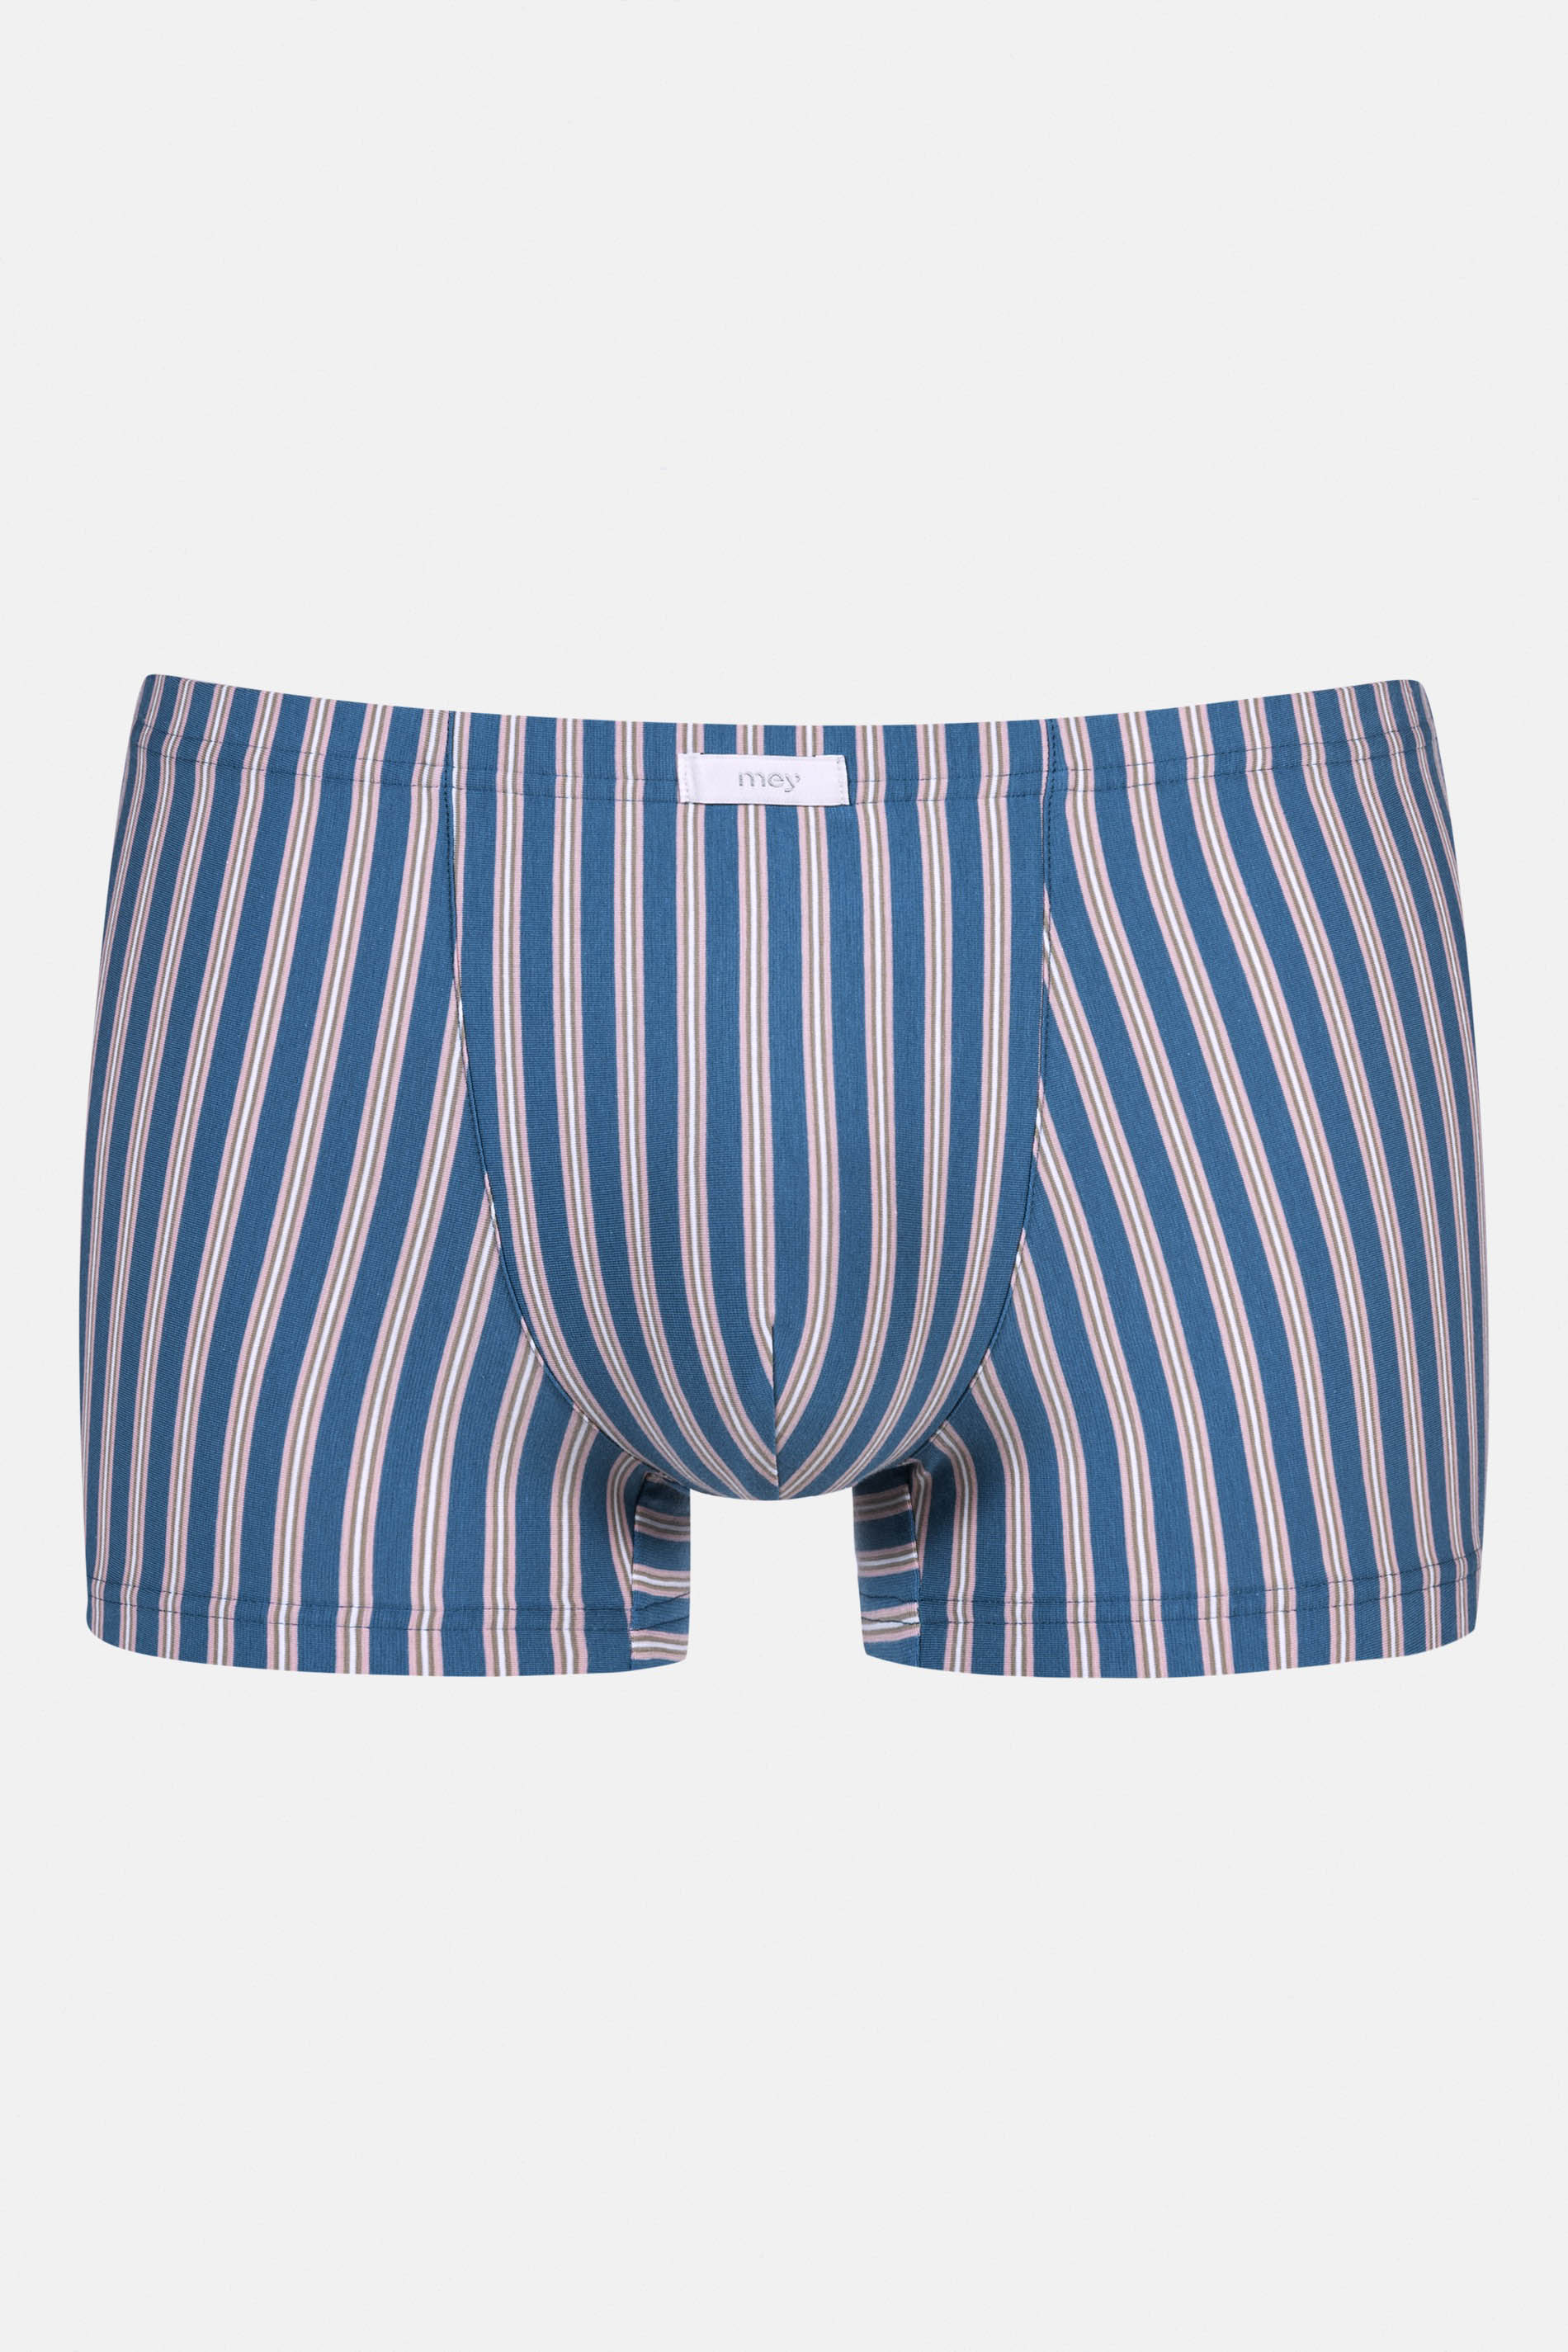 Shorty Serie Blue Stripes Freisteller | mey®